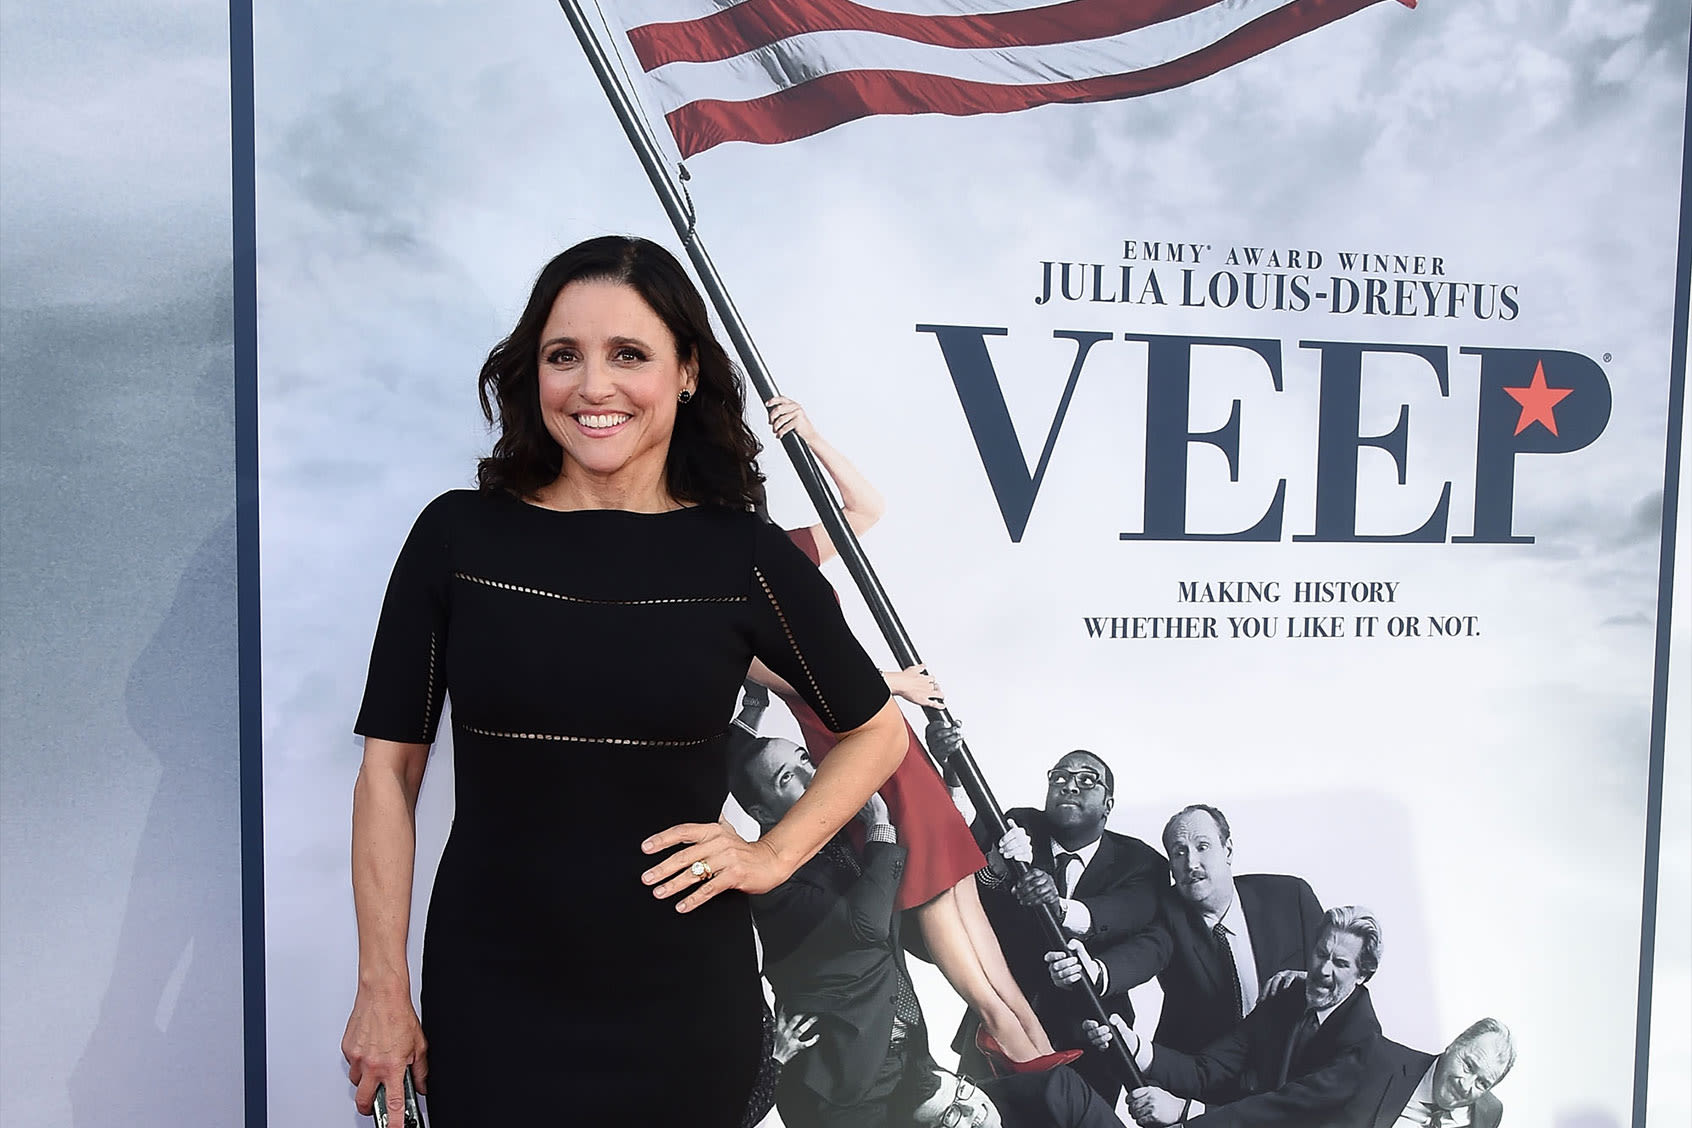 Kamala Harris' bid for presidency increases viewership of HBO satire "Veep"